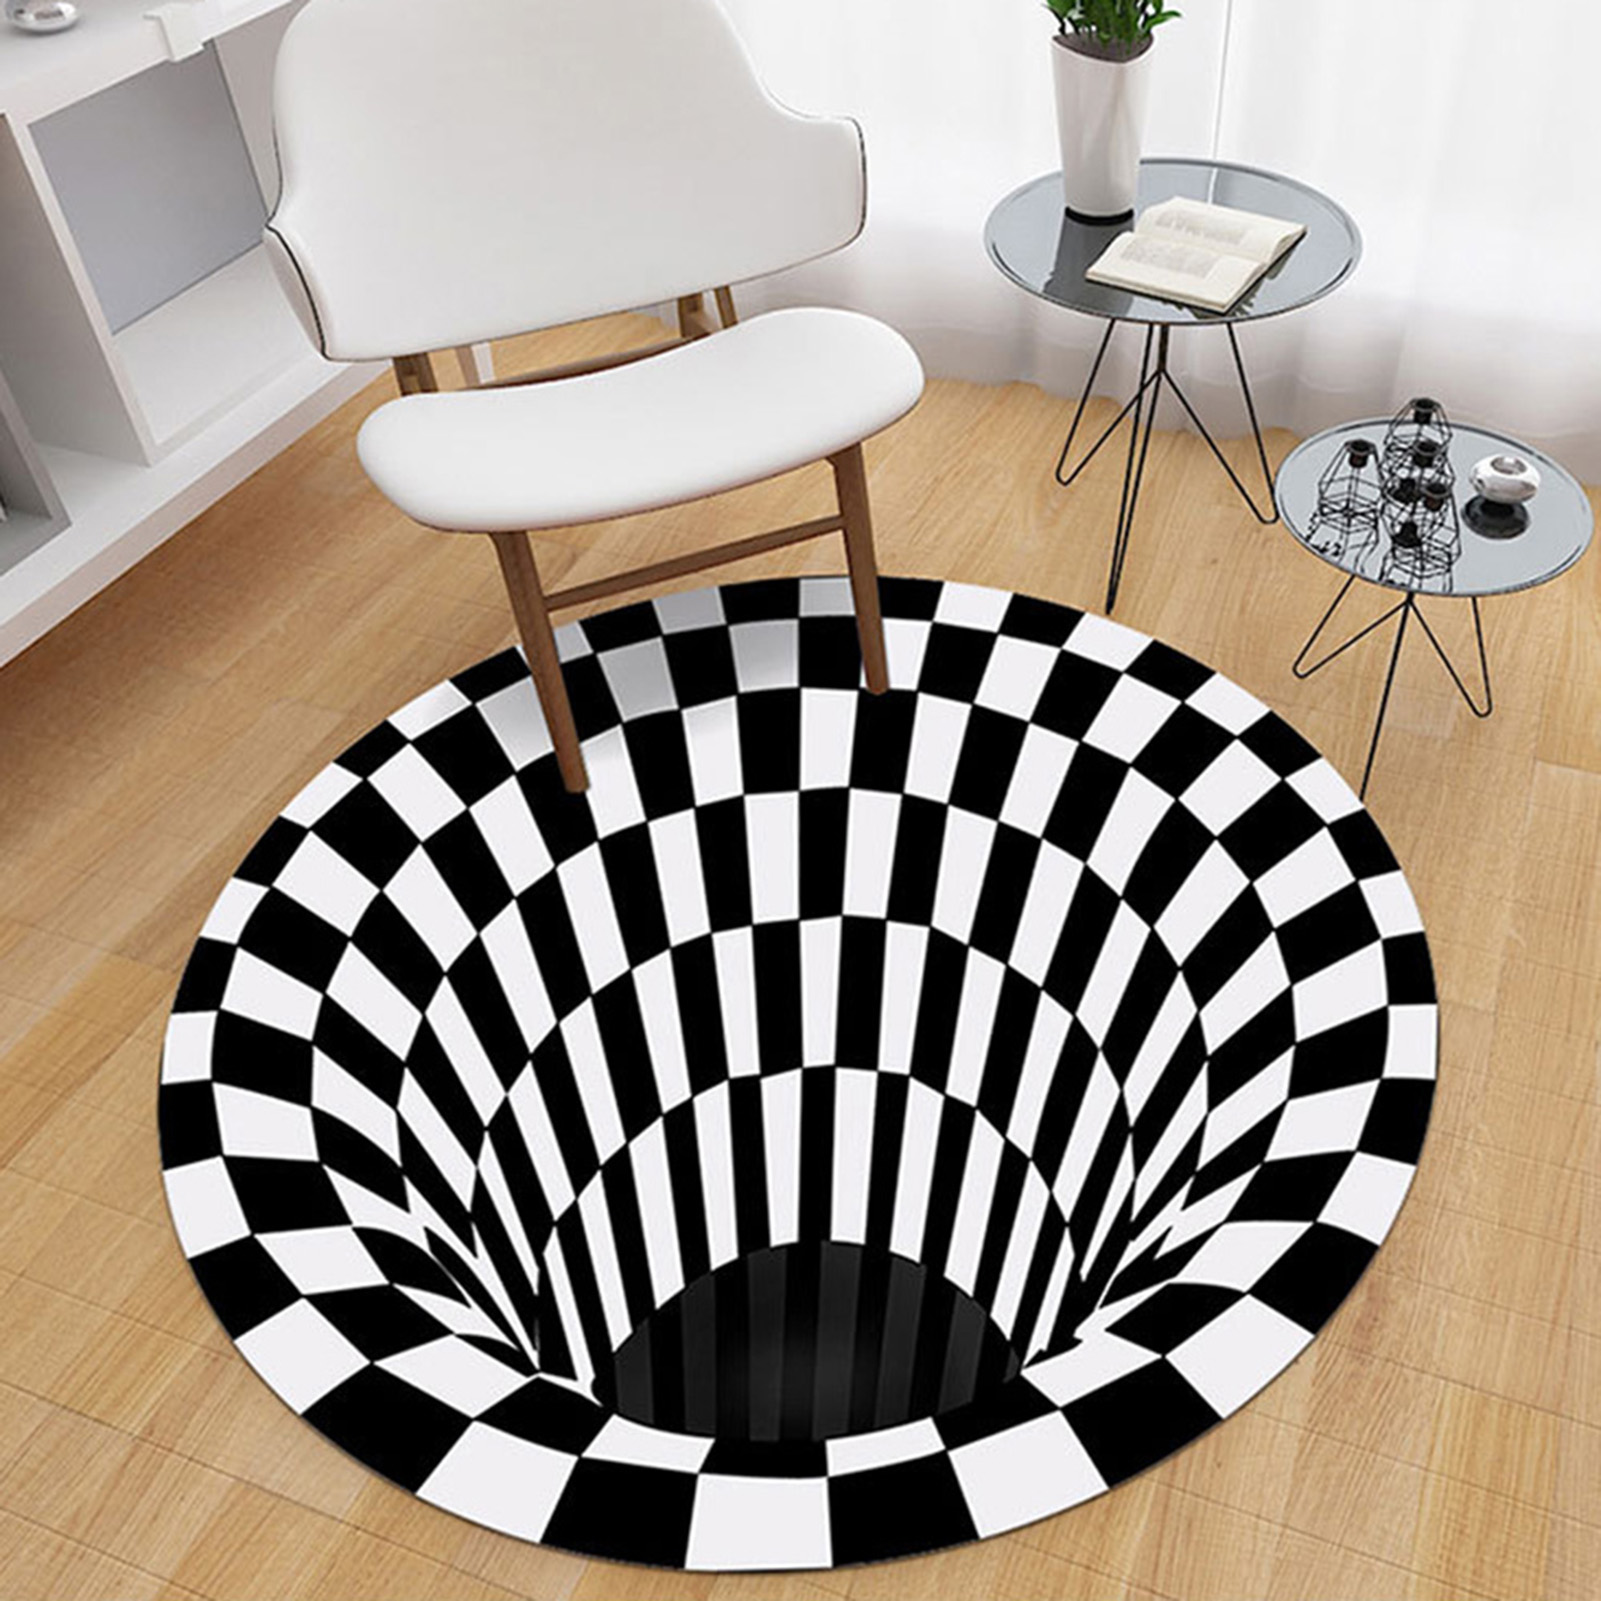 Và cuối cùng, tấm thảm dành tặng bạn để kết thúc bộ sưu tập ngày hôm nay là một thiết kế 'đánh lừa thị giác', tạo nên điểm nhấn táo bạo với hai gam màu trắng đen cổ điển. Trông nó giống như một hố sâu không đáy có thể khiến người ta tưởng như mình sắp 'lọt thỏm' khi bước vào.